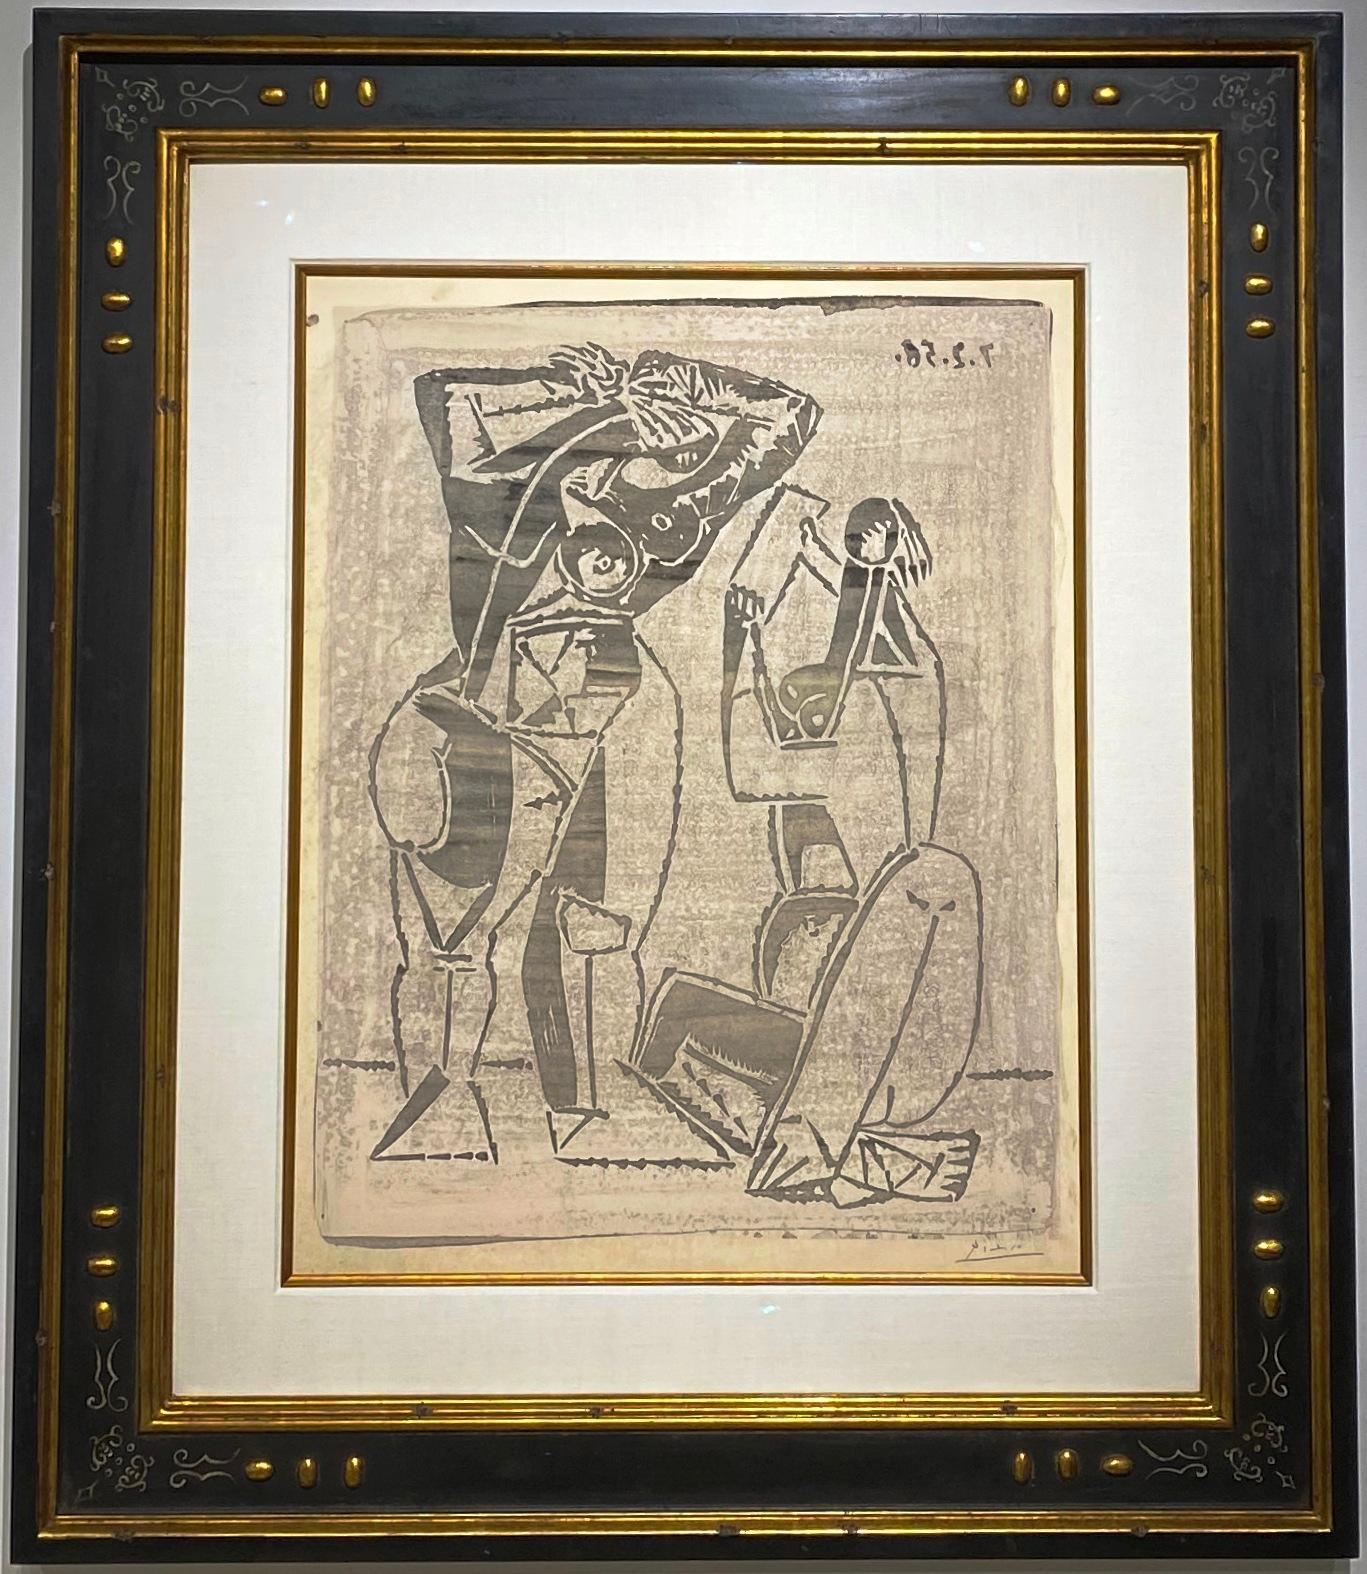 PABLO PICASSO (1881-1973) "Femmes au Miroir" - Print by Pablo Picasso